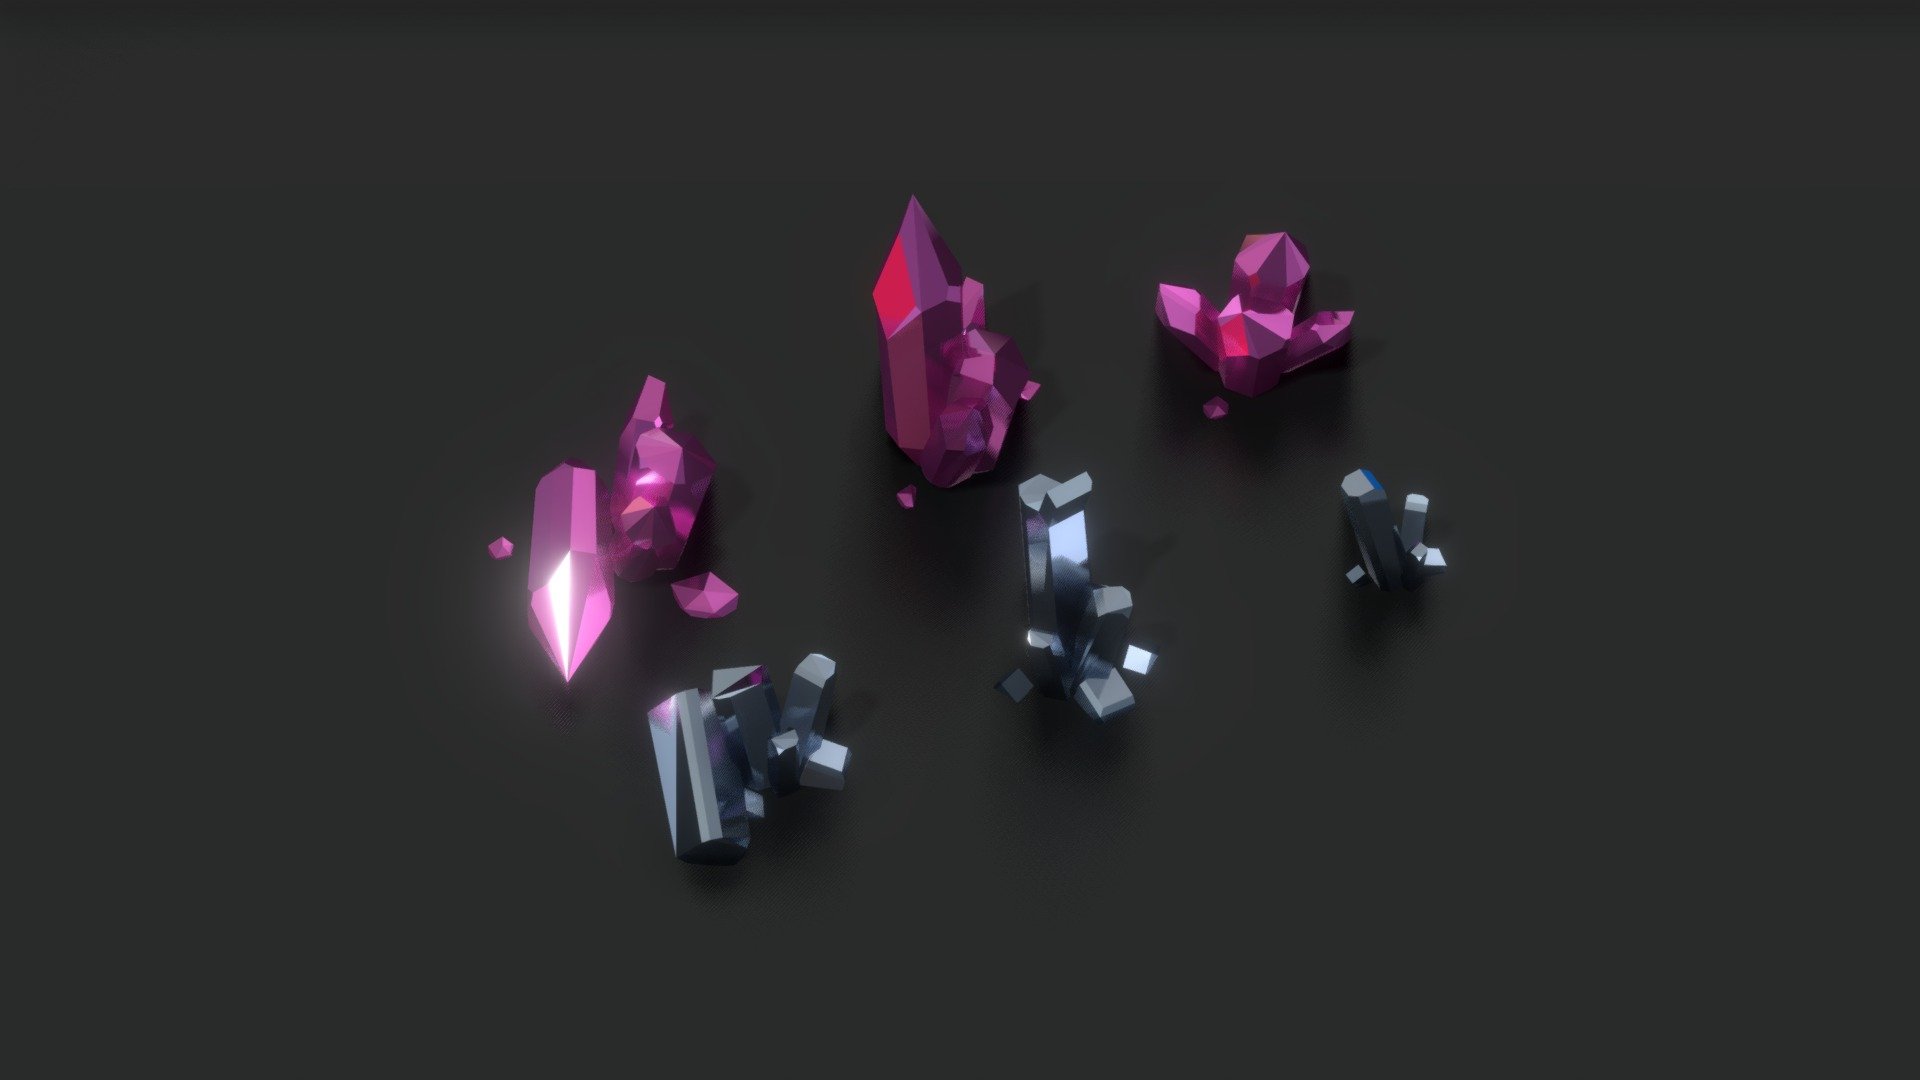 lowpoly crystals. no uv's no textures 3d model